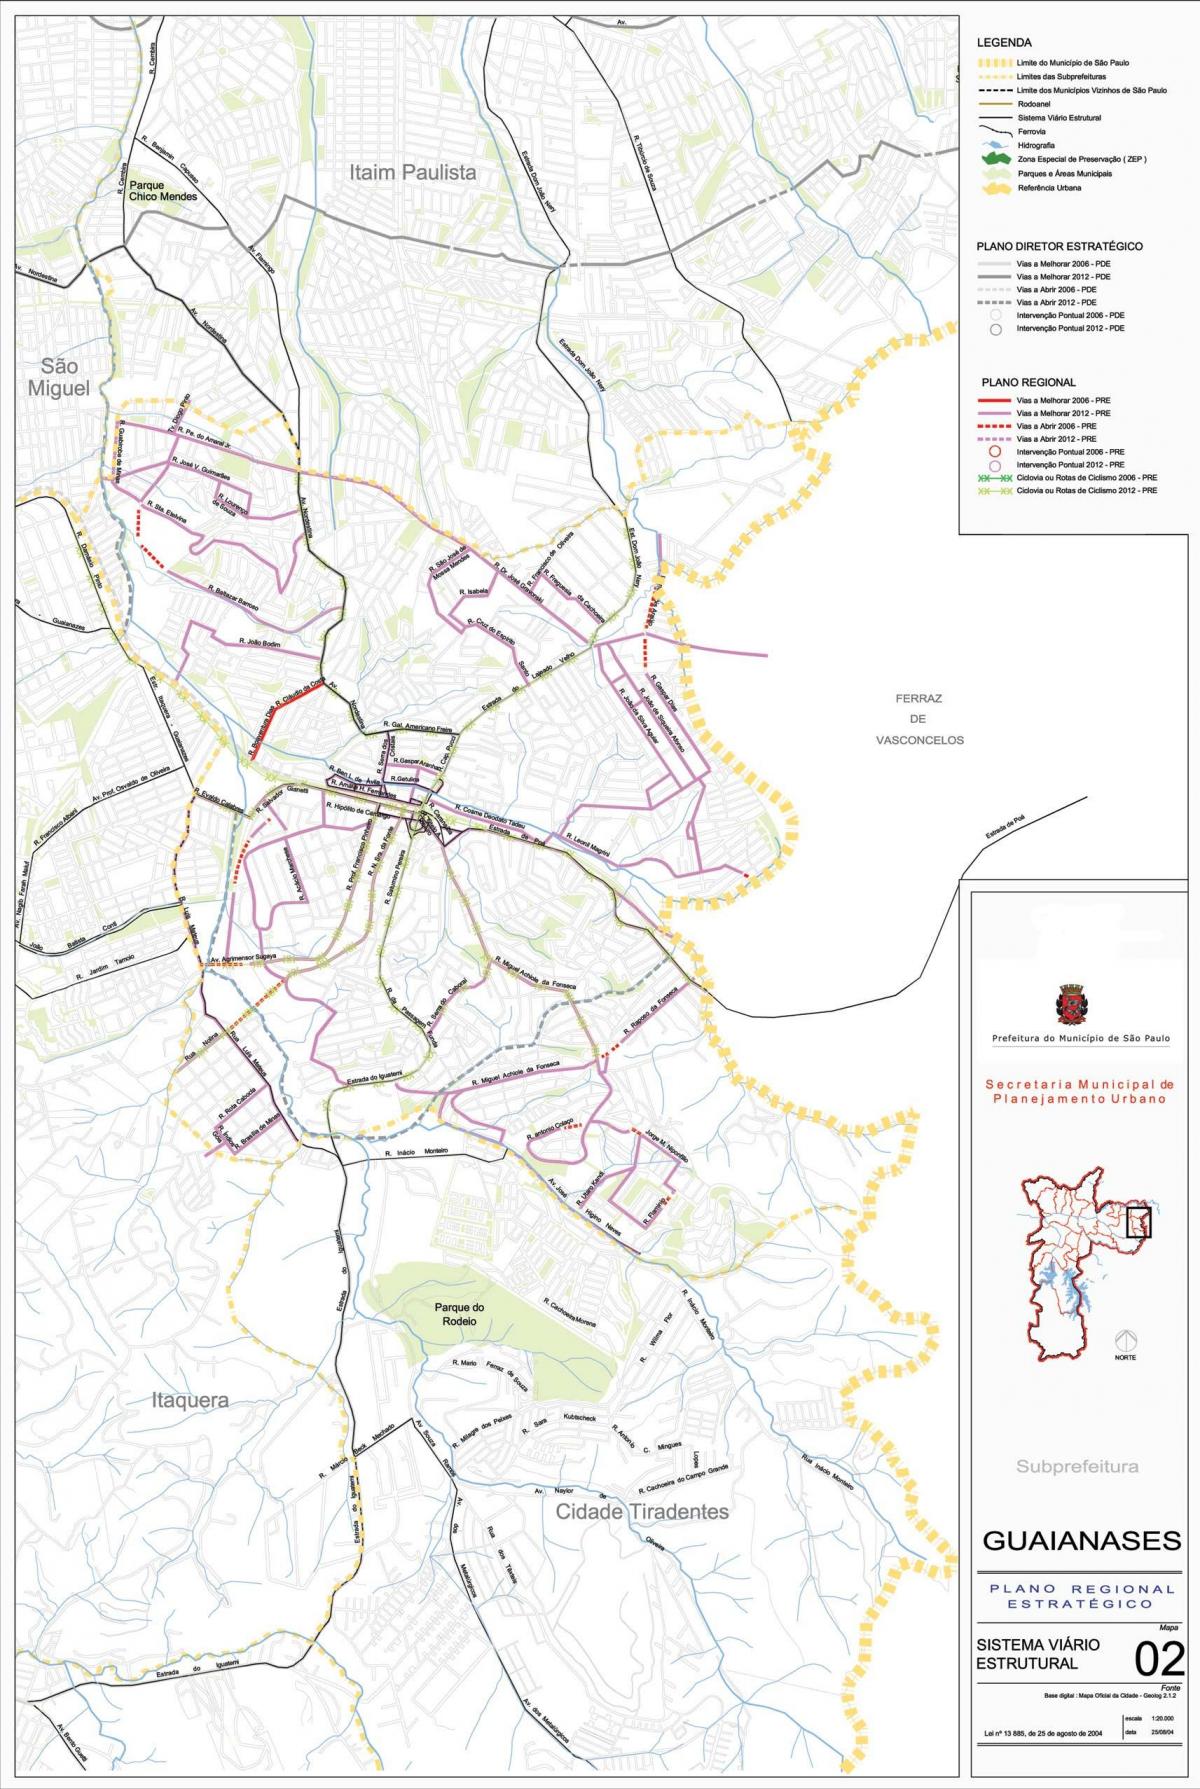 Kaart Guaianases São Paulo - Teede